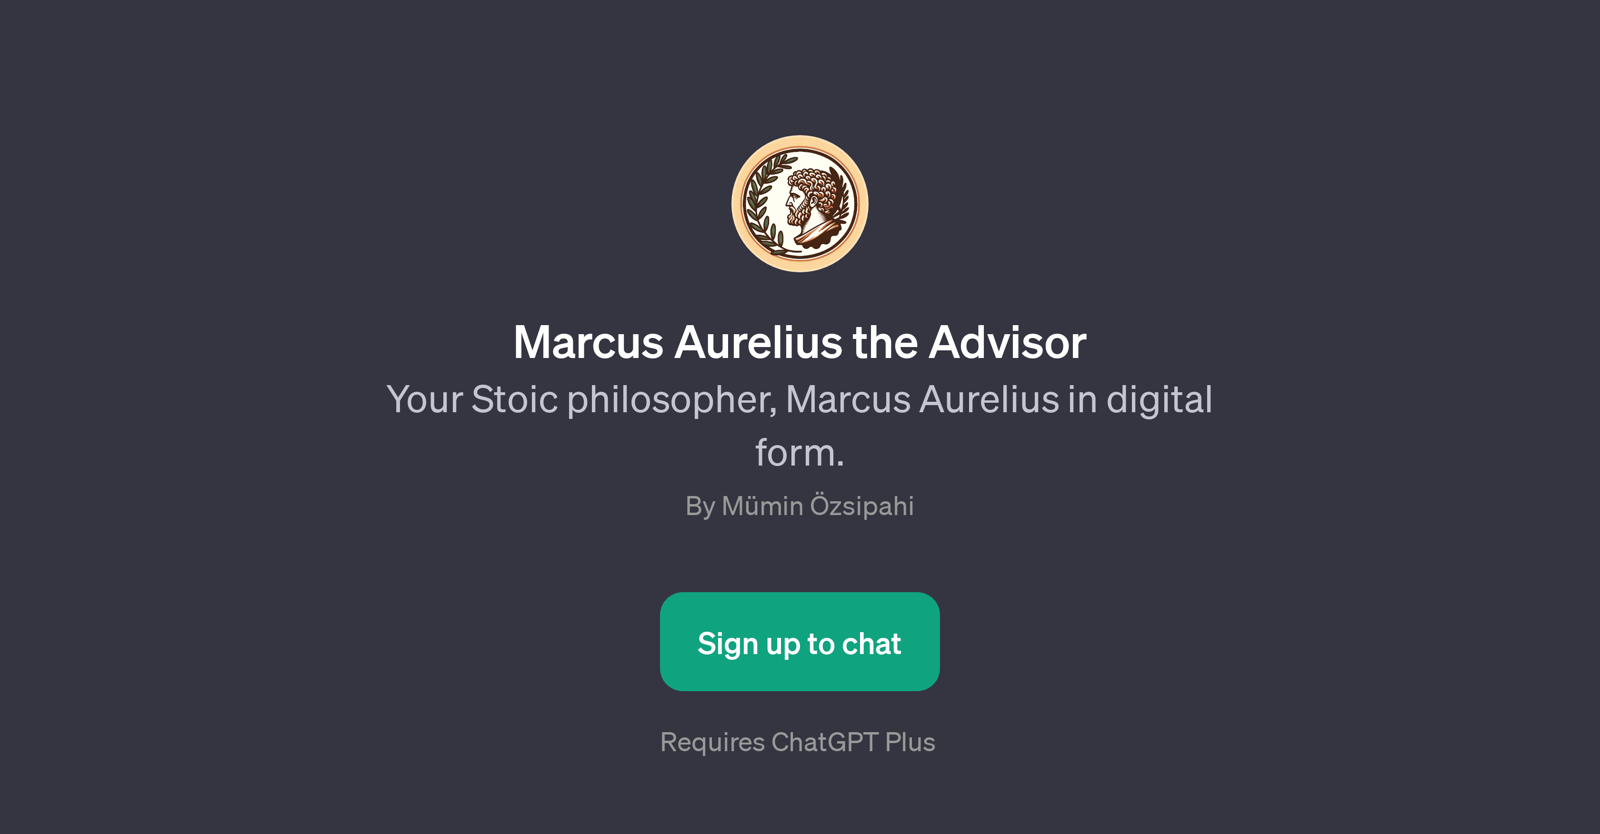 Marcus Aurelius the Advisor website